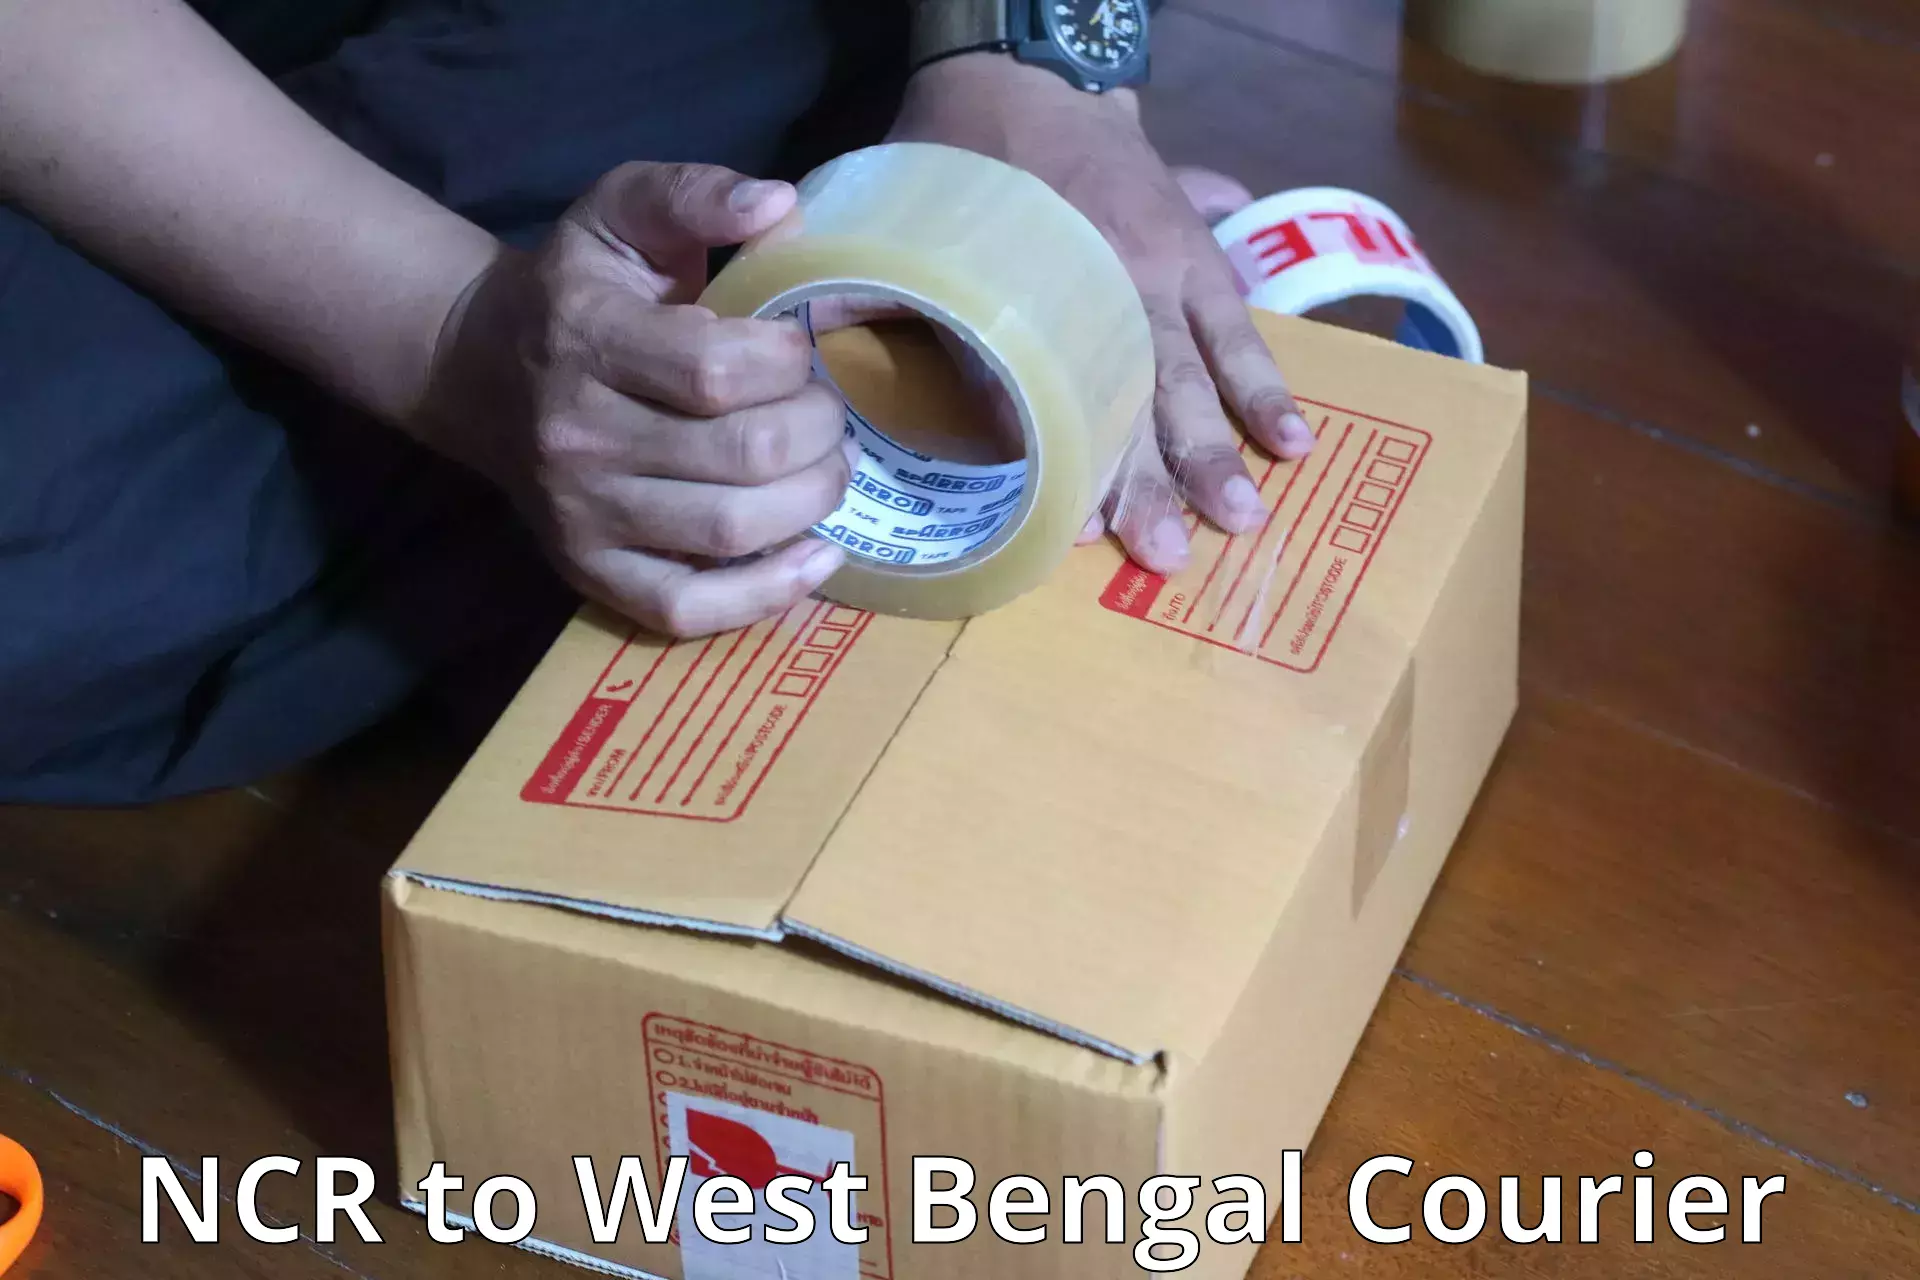 Baggage shipping advice NCR to Kolkata